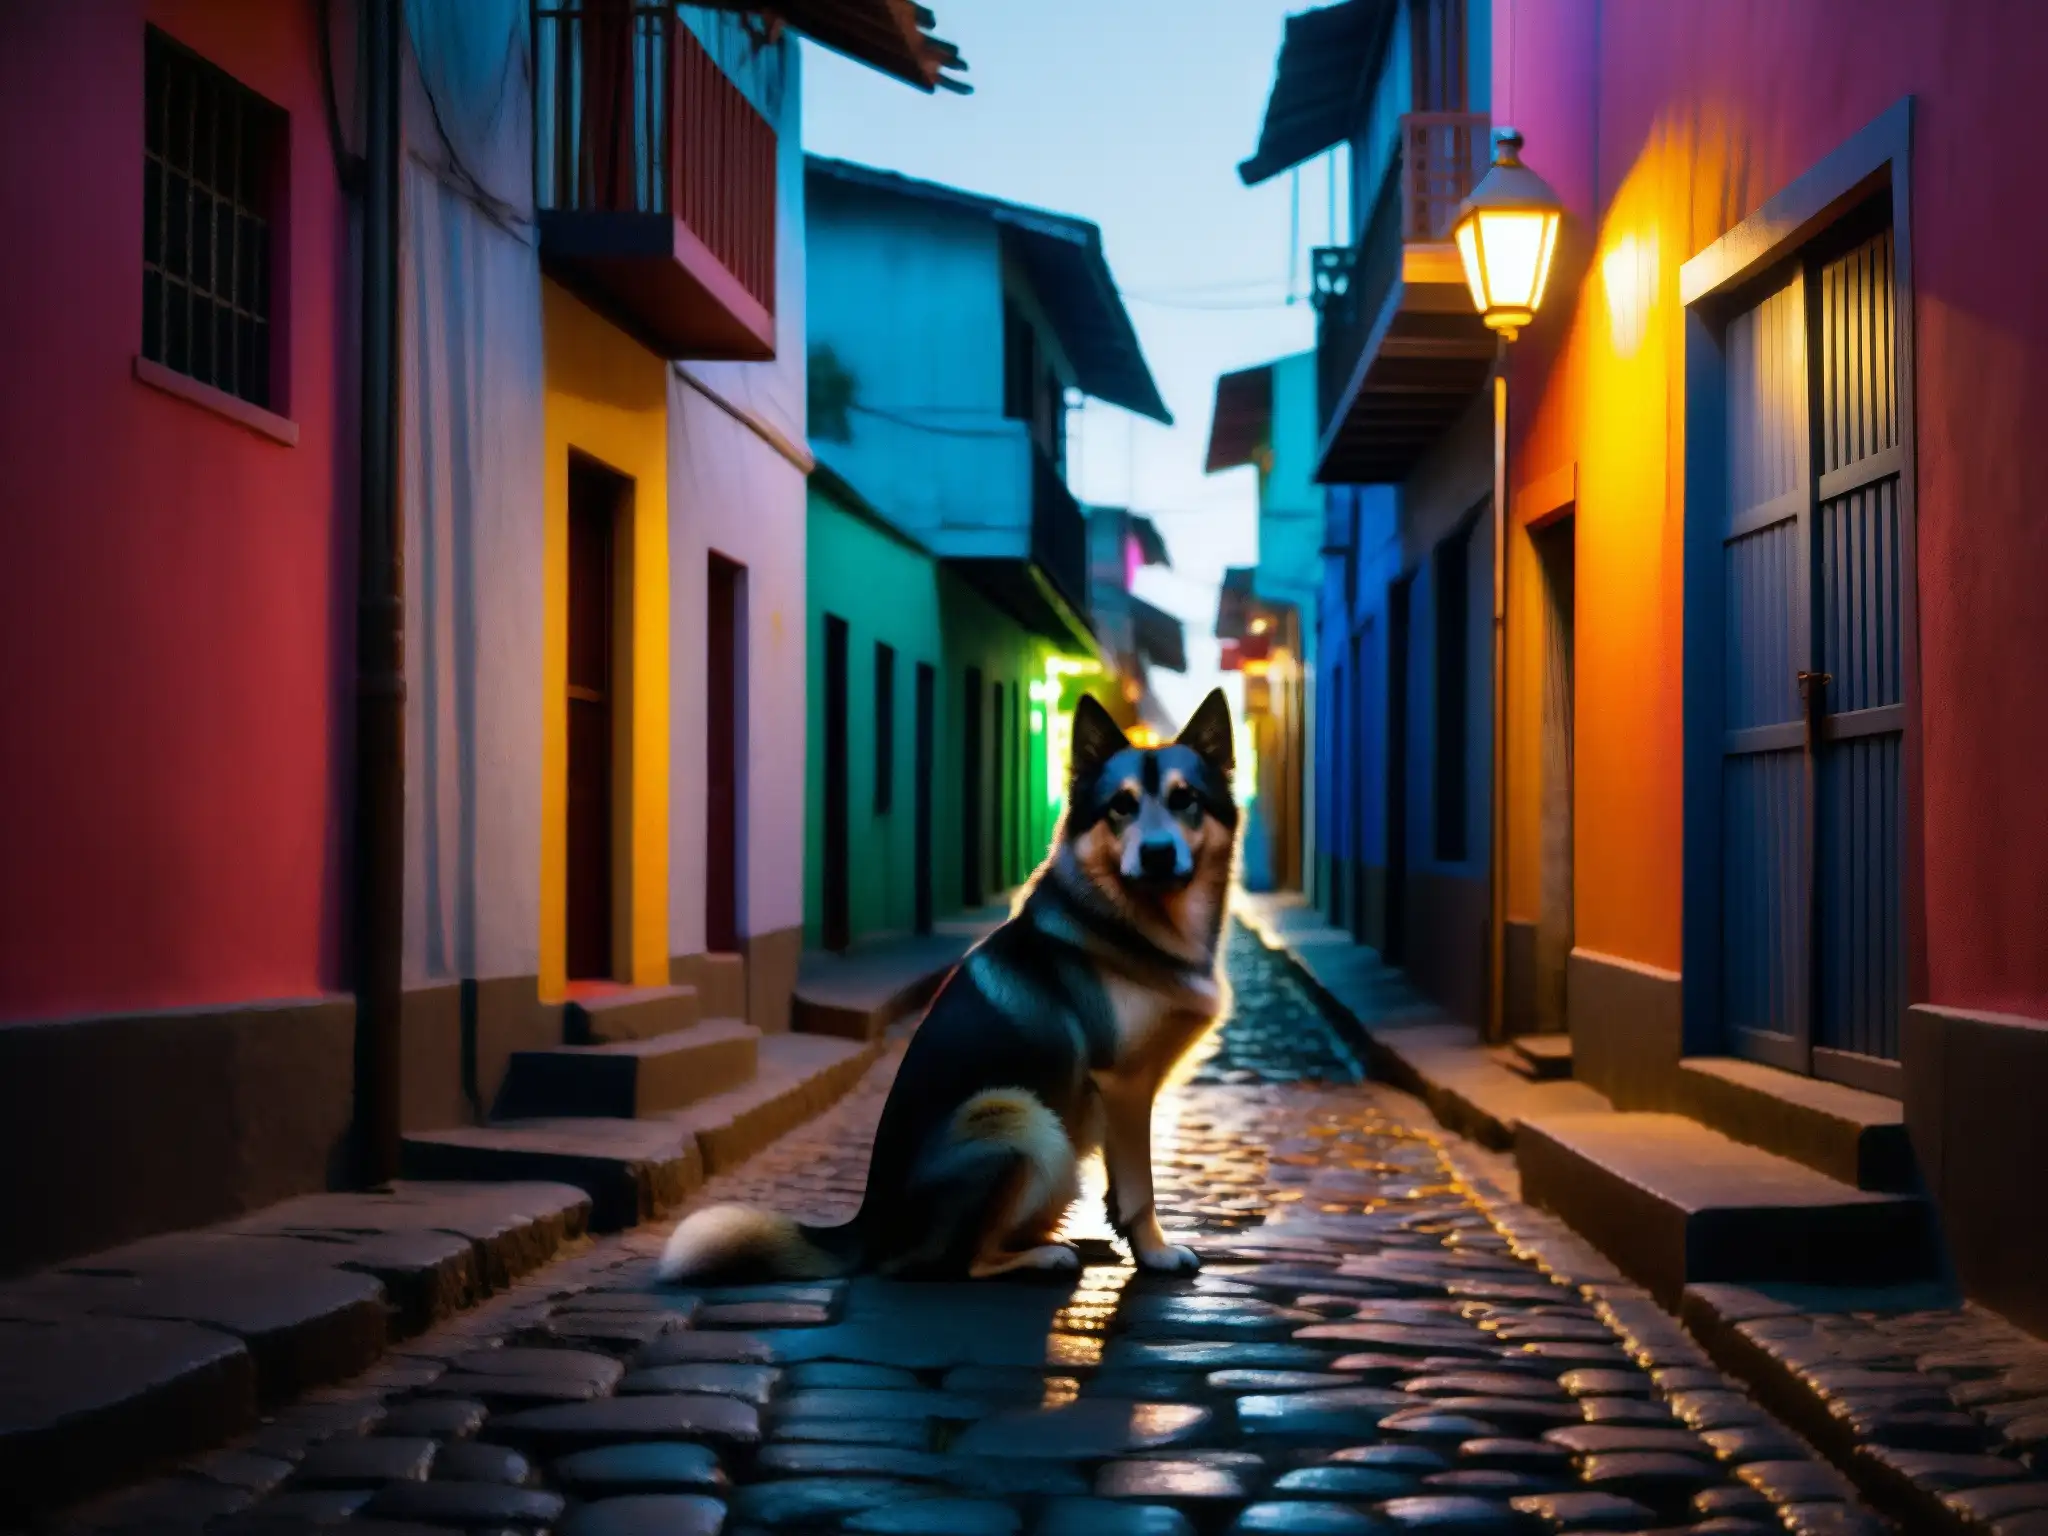 En la oscuridad de un callejón, brilla la mirada del El Cadejo, protector o predador, evocando misterio y temor en un pueblo de Centroamérica